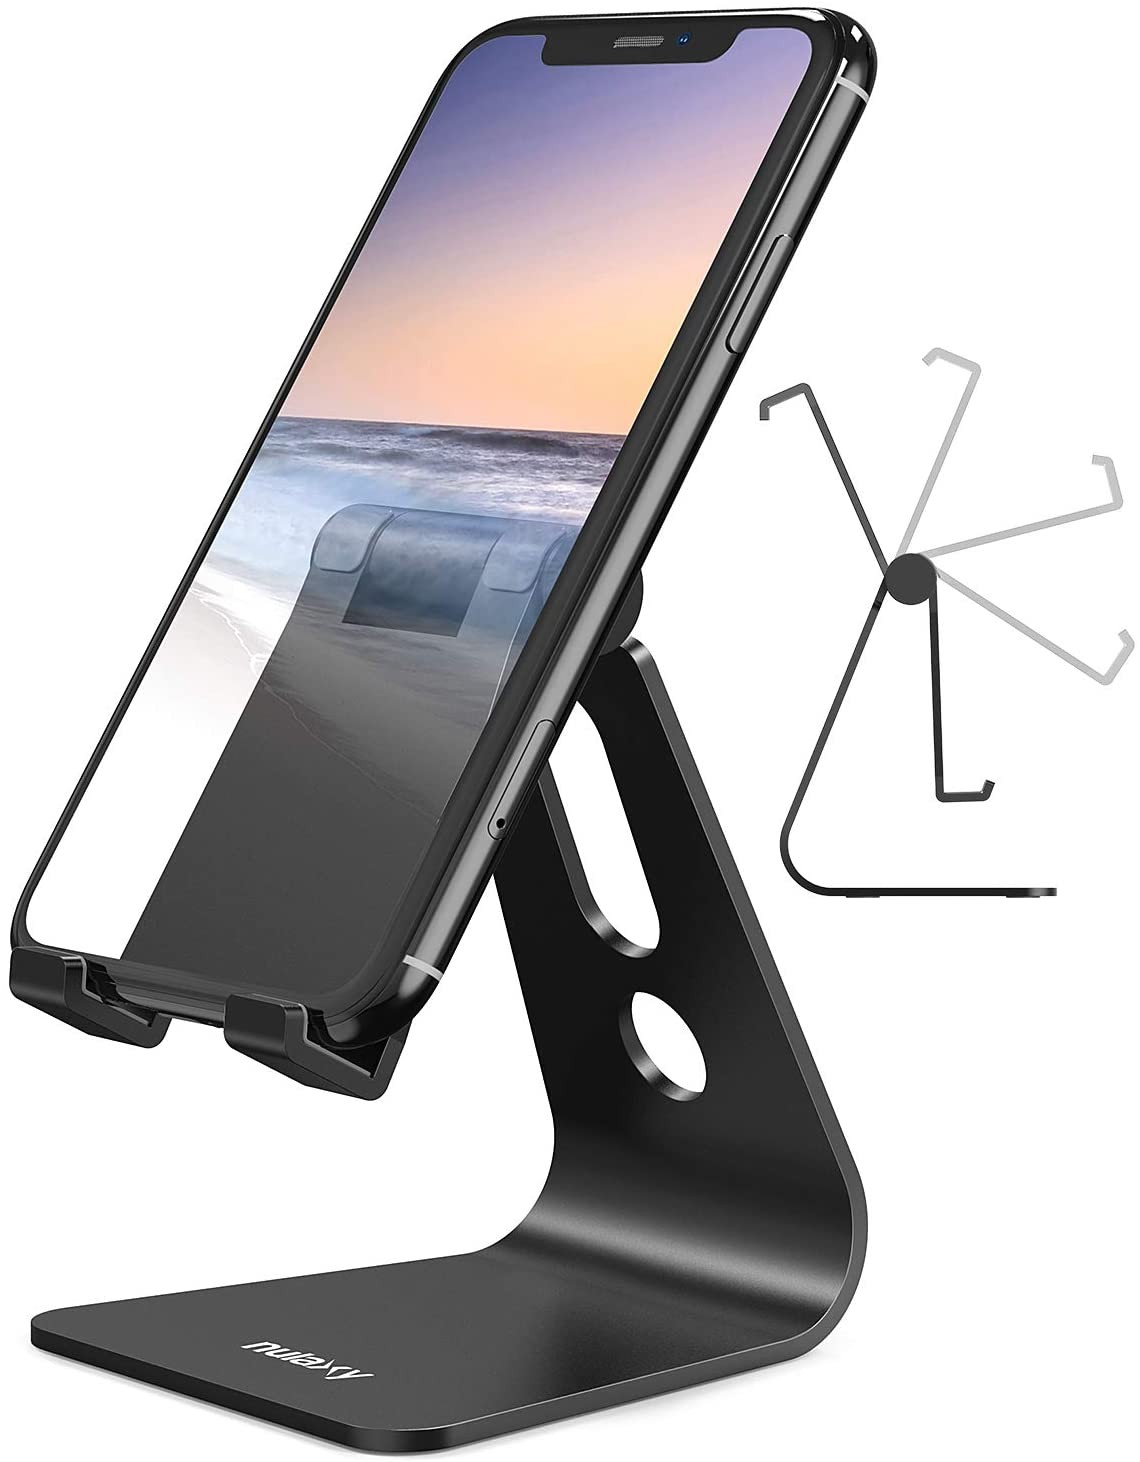 Phone Stand, Adjustable Cell Phone Stand, Phone Holder for Desk, Desktop Holder, Cradle, Dock